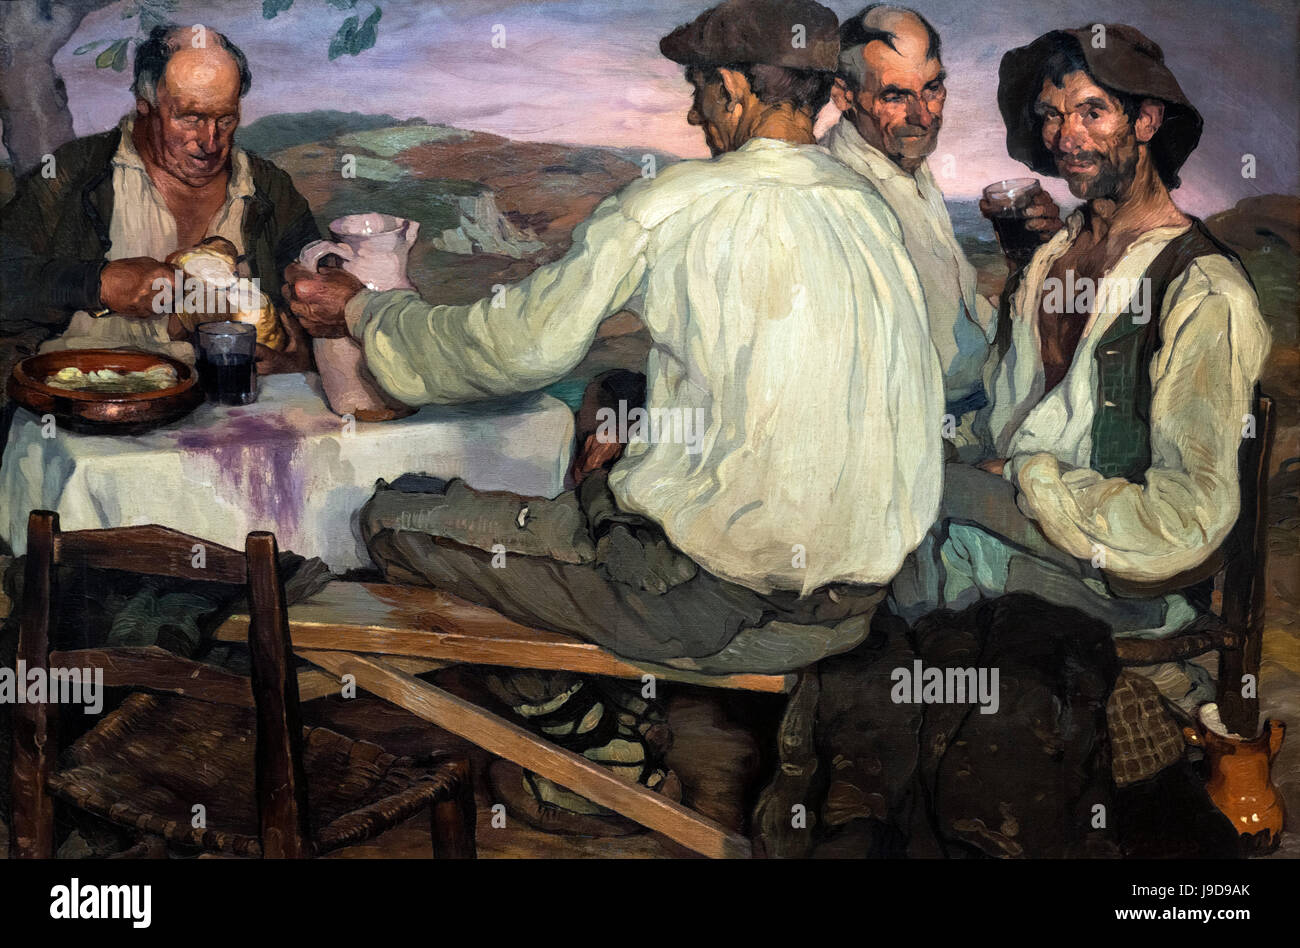 Spanische Bauern von Ignacio Zuloaga (1870-1945), Öl auf Leinwand, 1905 Stockfoto